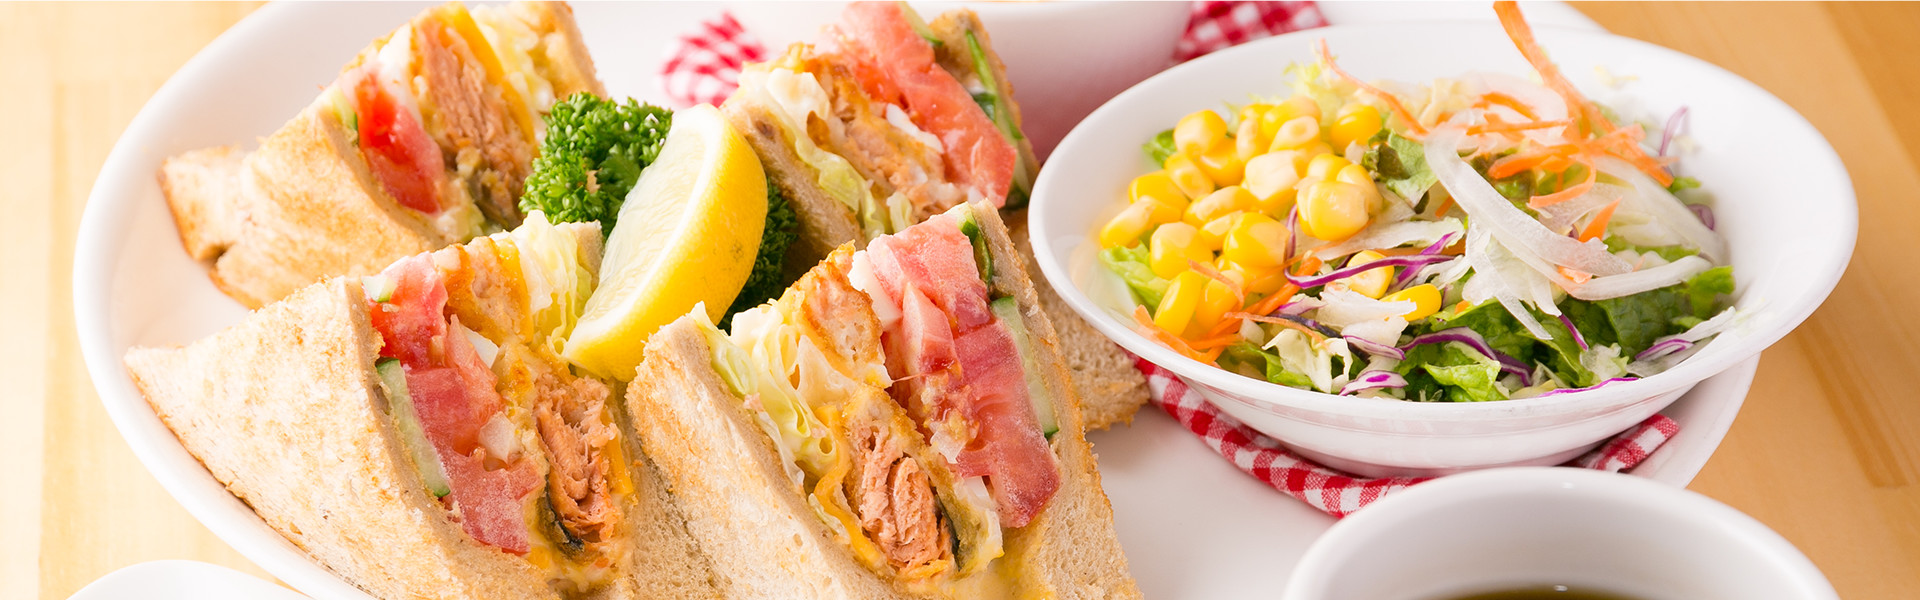 サンドイッチはテイクアウト可能です。お好きなサンドイッチを選んで、お好きな場所で楽しんでください。